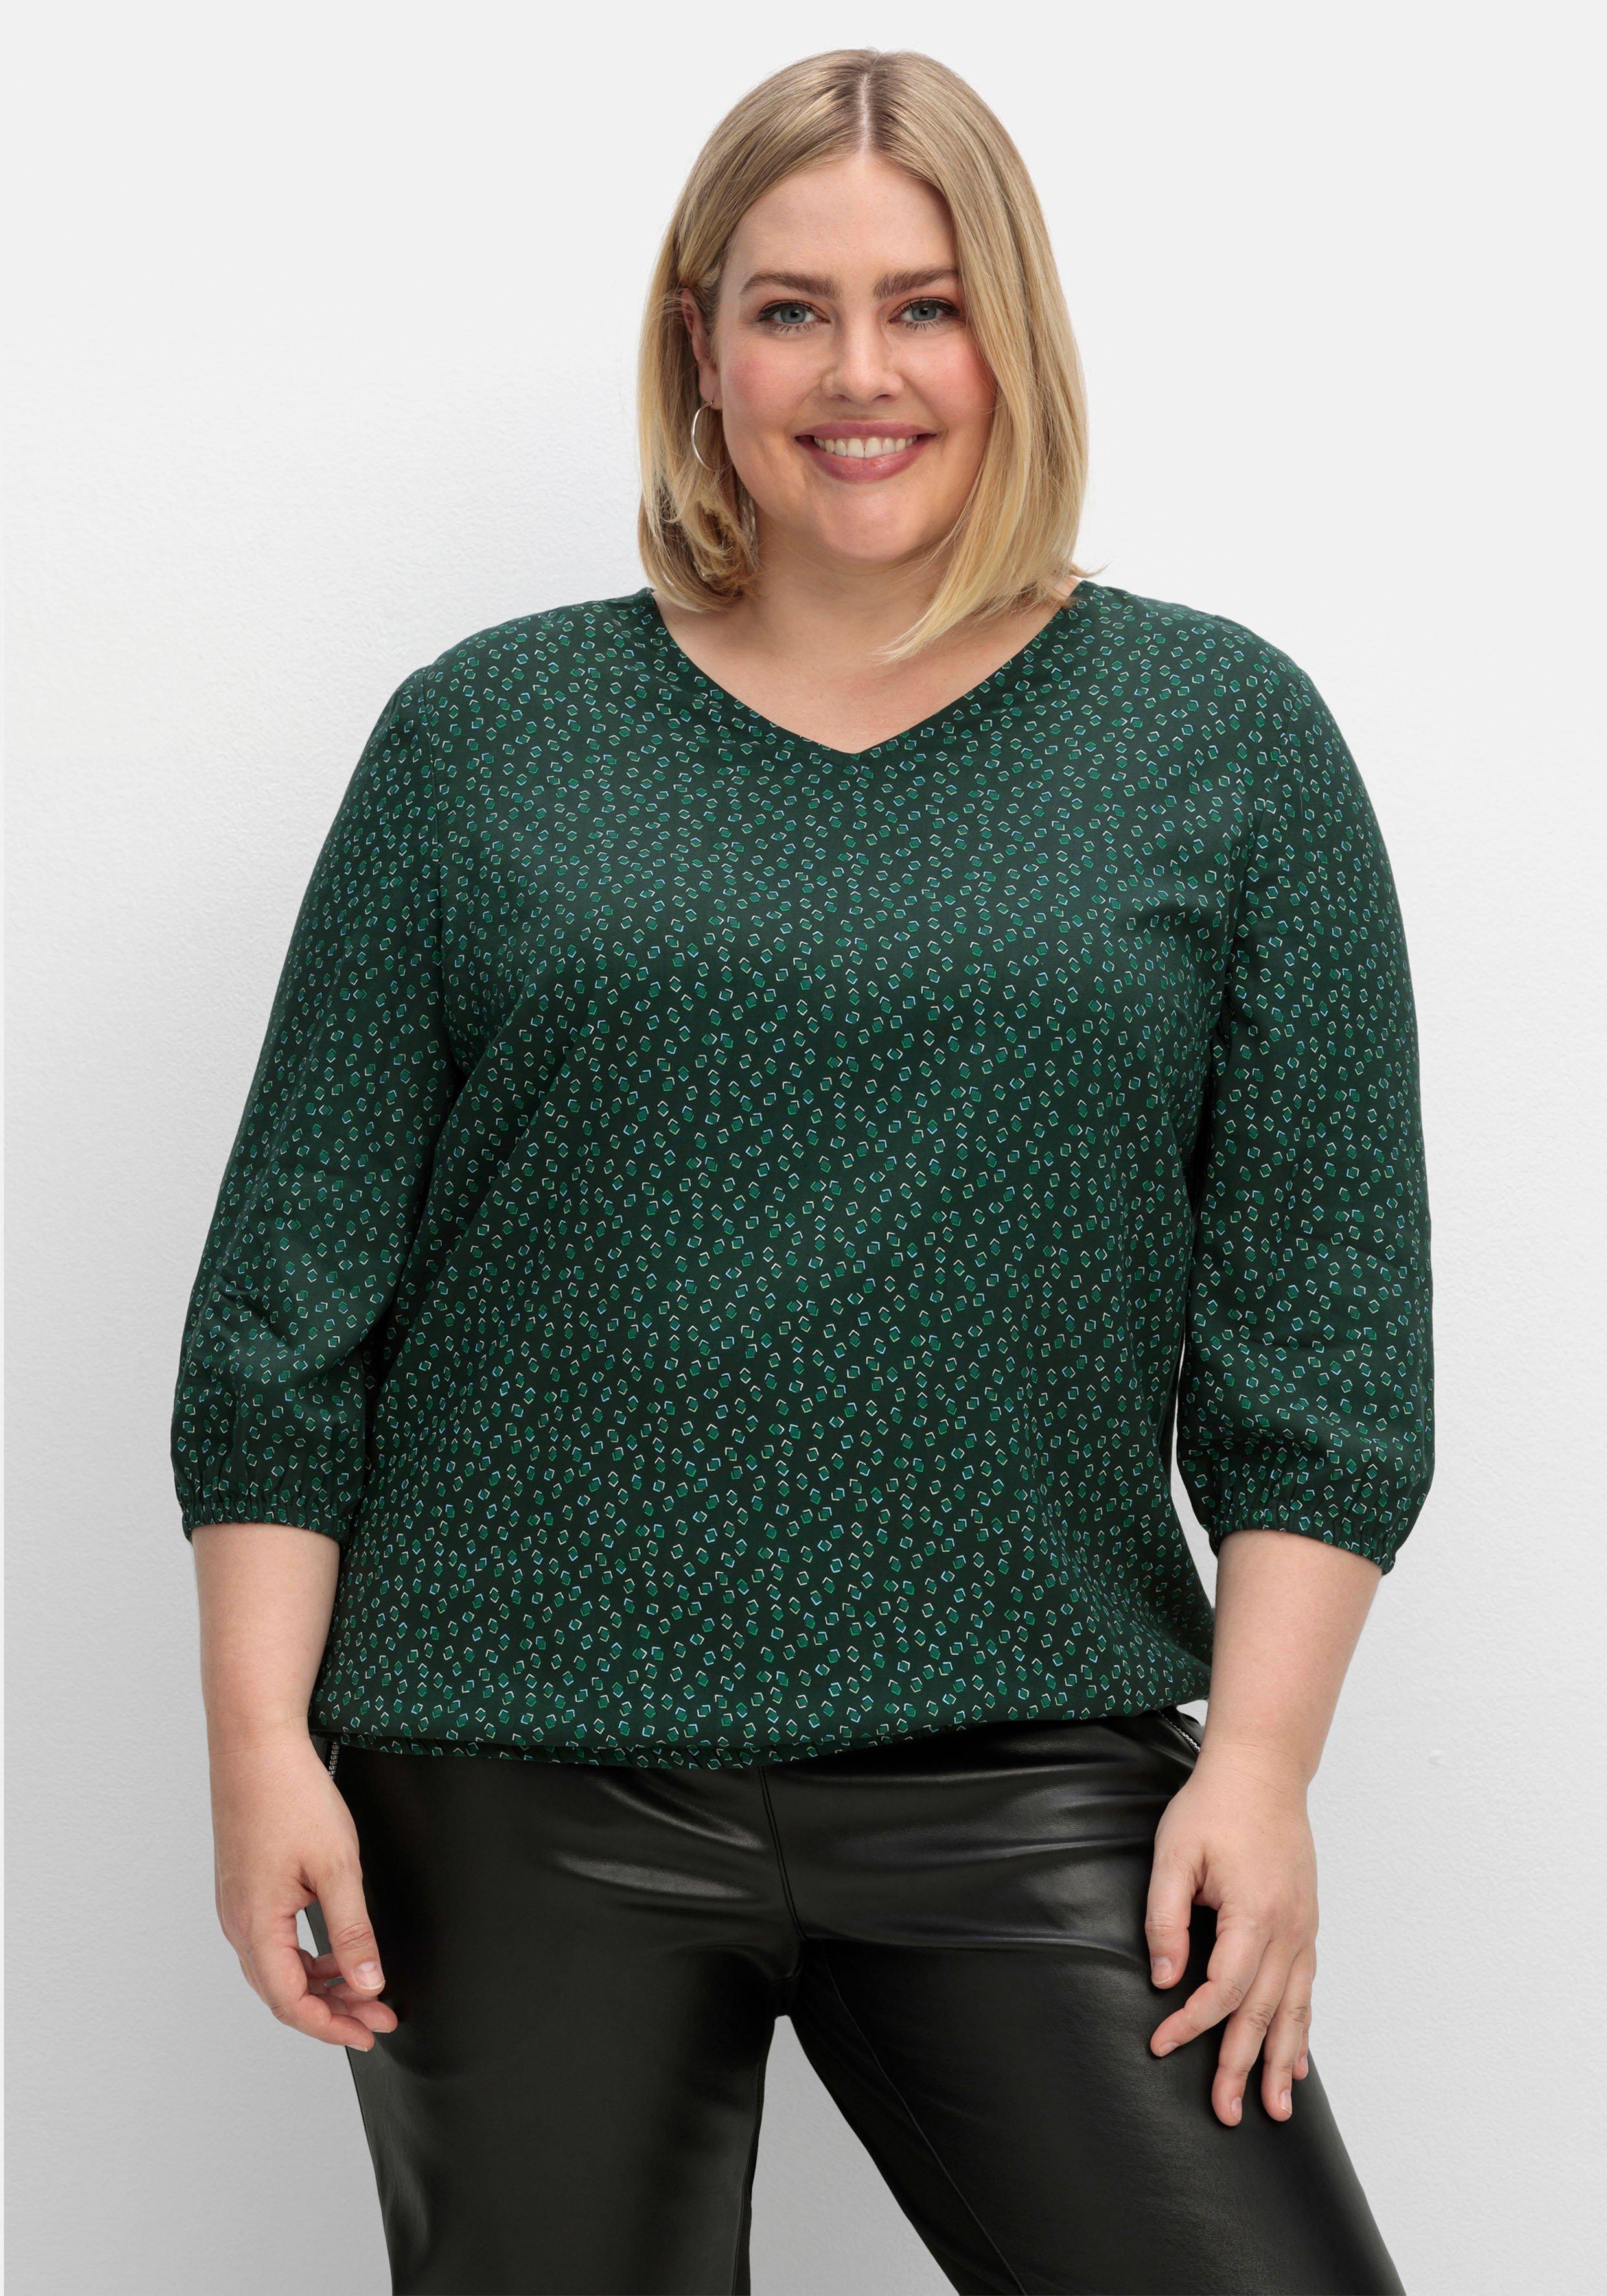 Blusen & Tuniken große Size Plus 58 Größe Größen sheego ♥ › | Mode grün